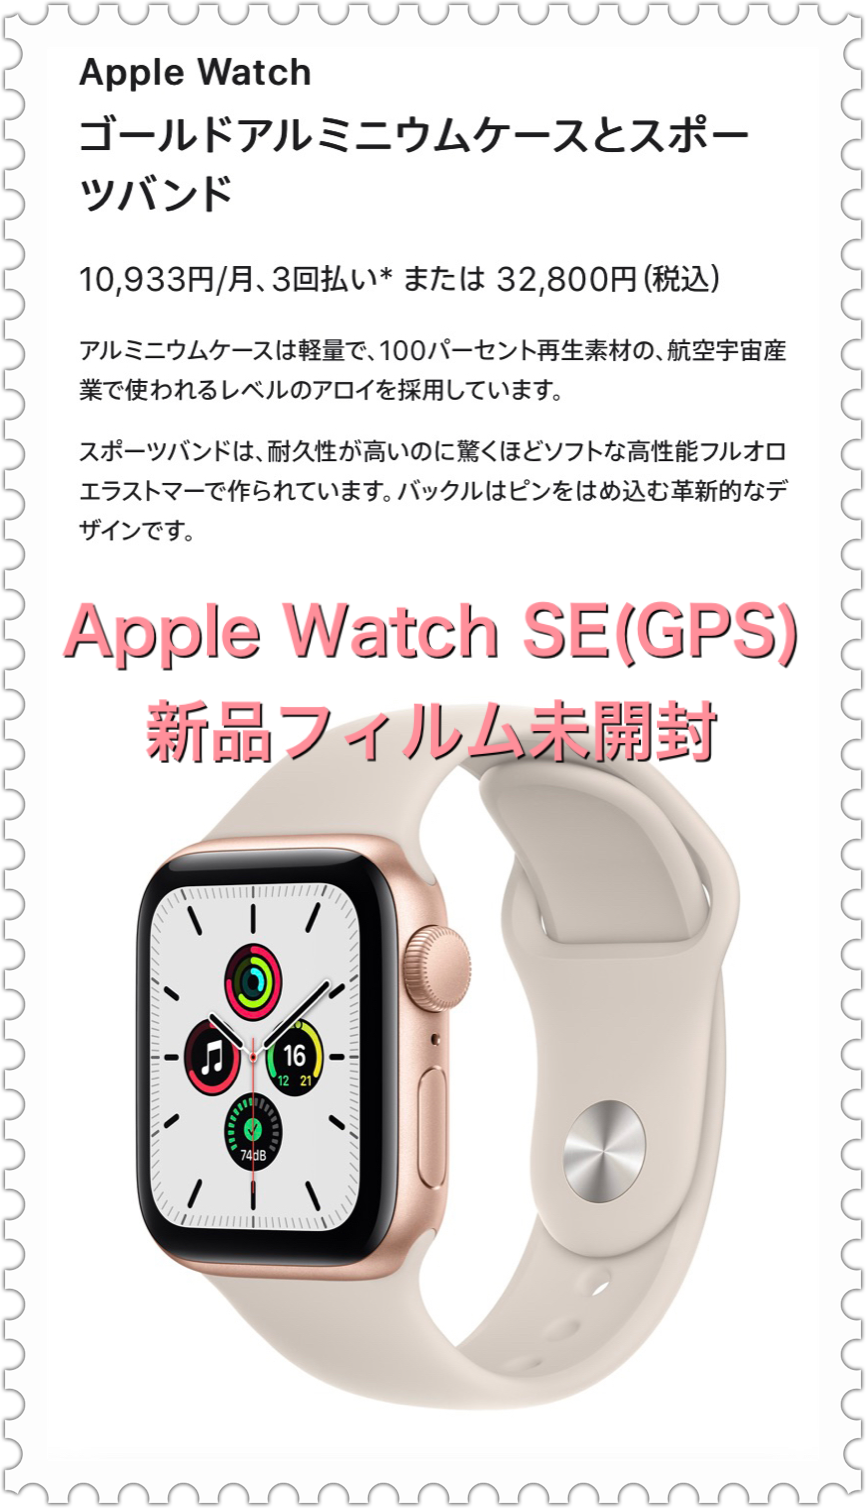 Apple Watch Series 5 GPS アルミニウム 44mm